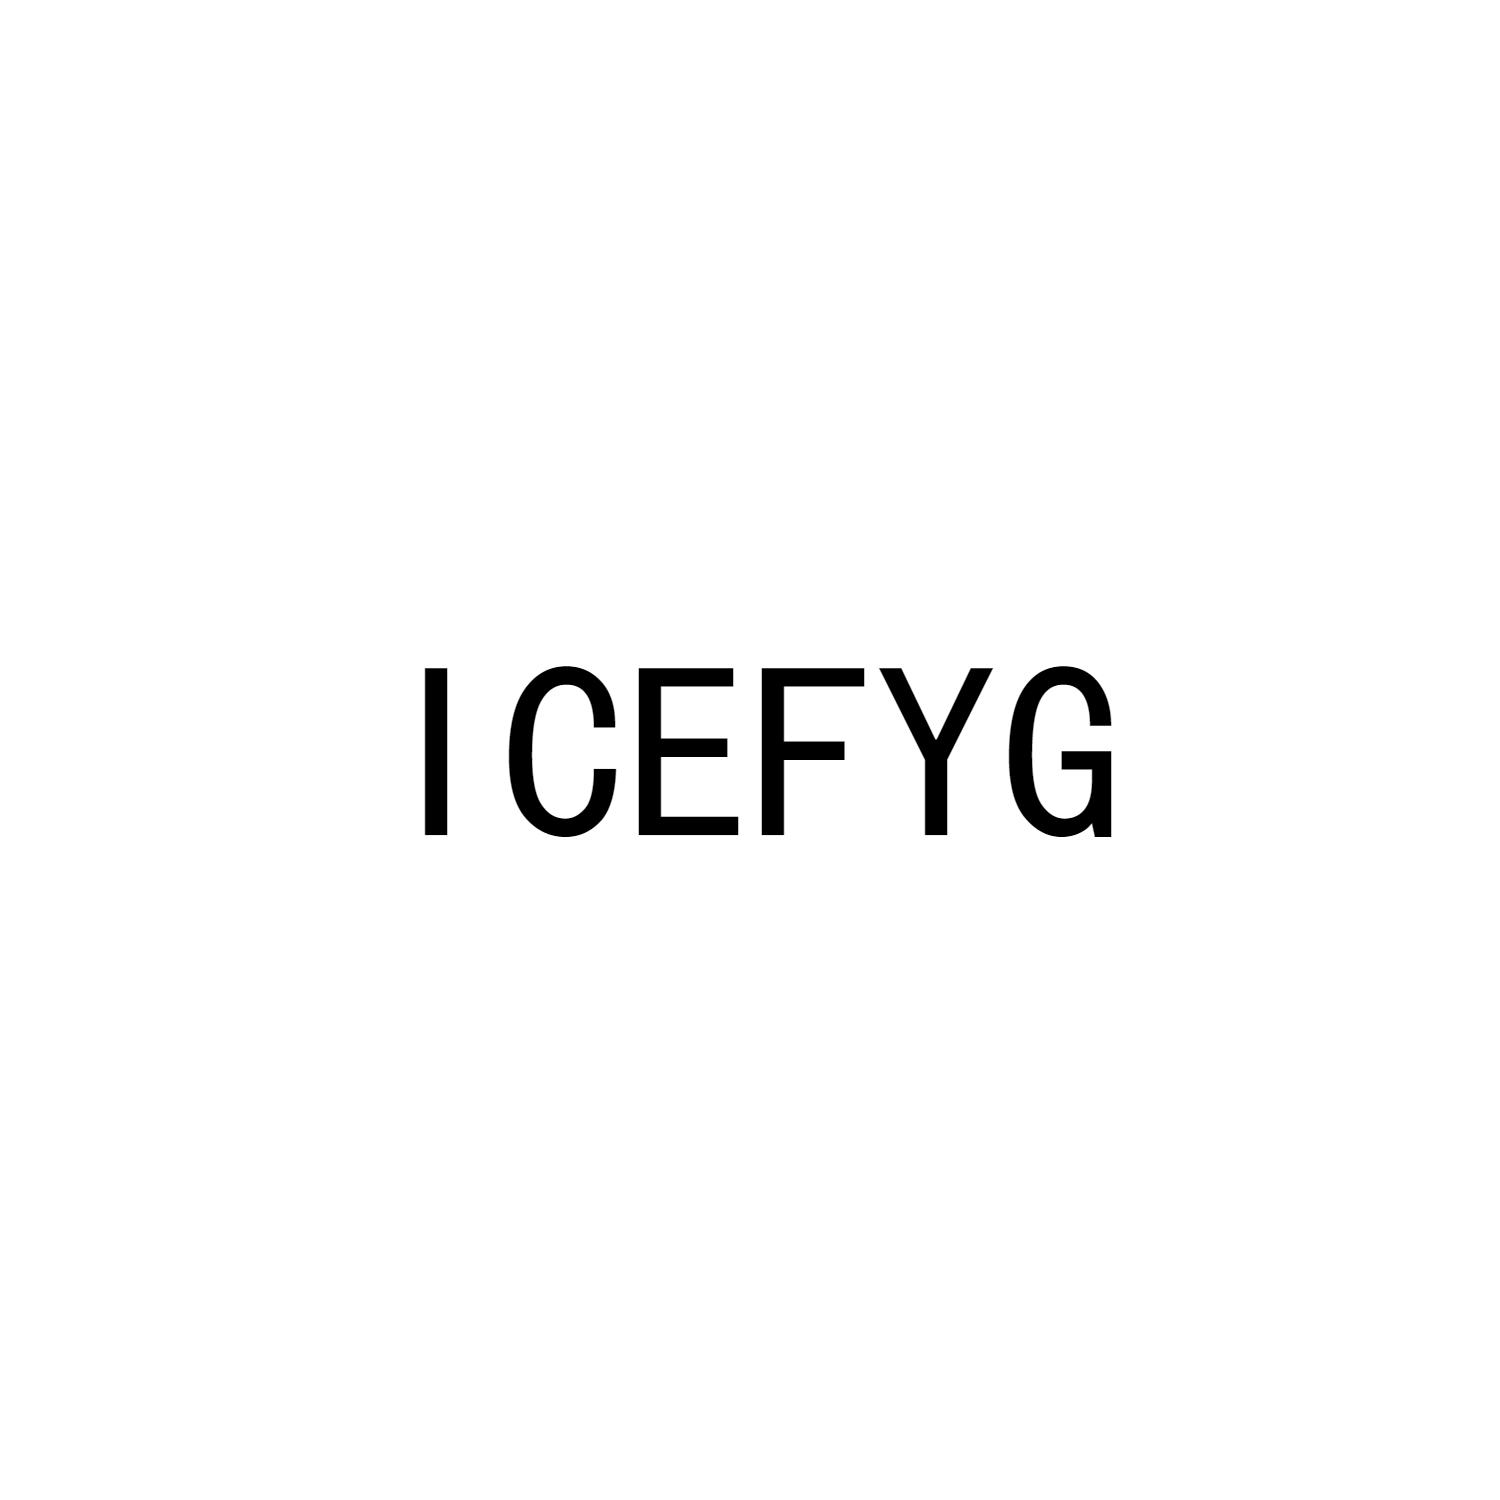 ICEFYG